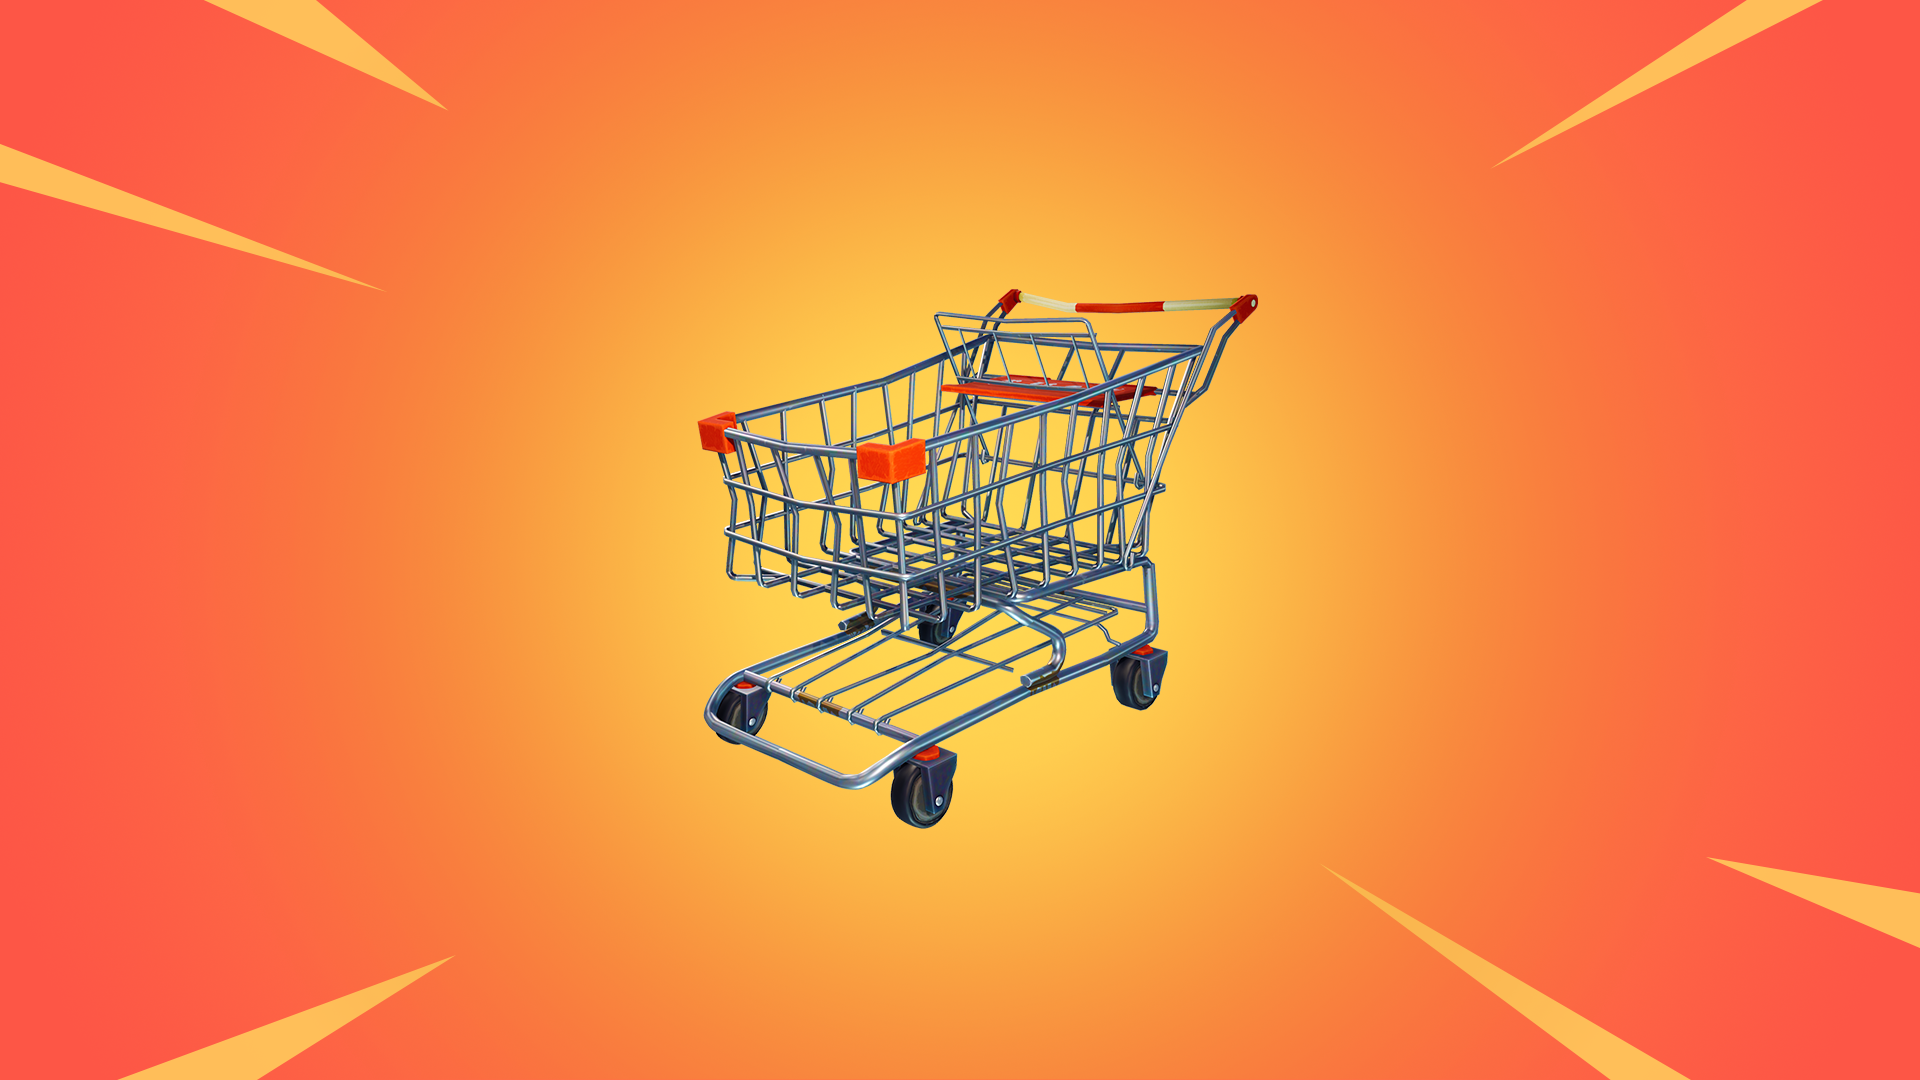 shopping cart clipart fortnite